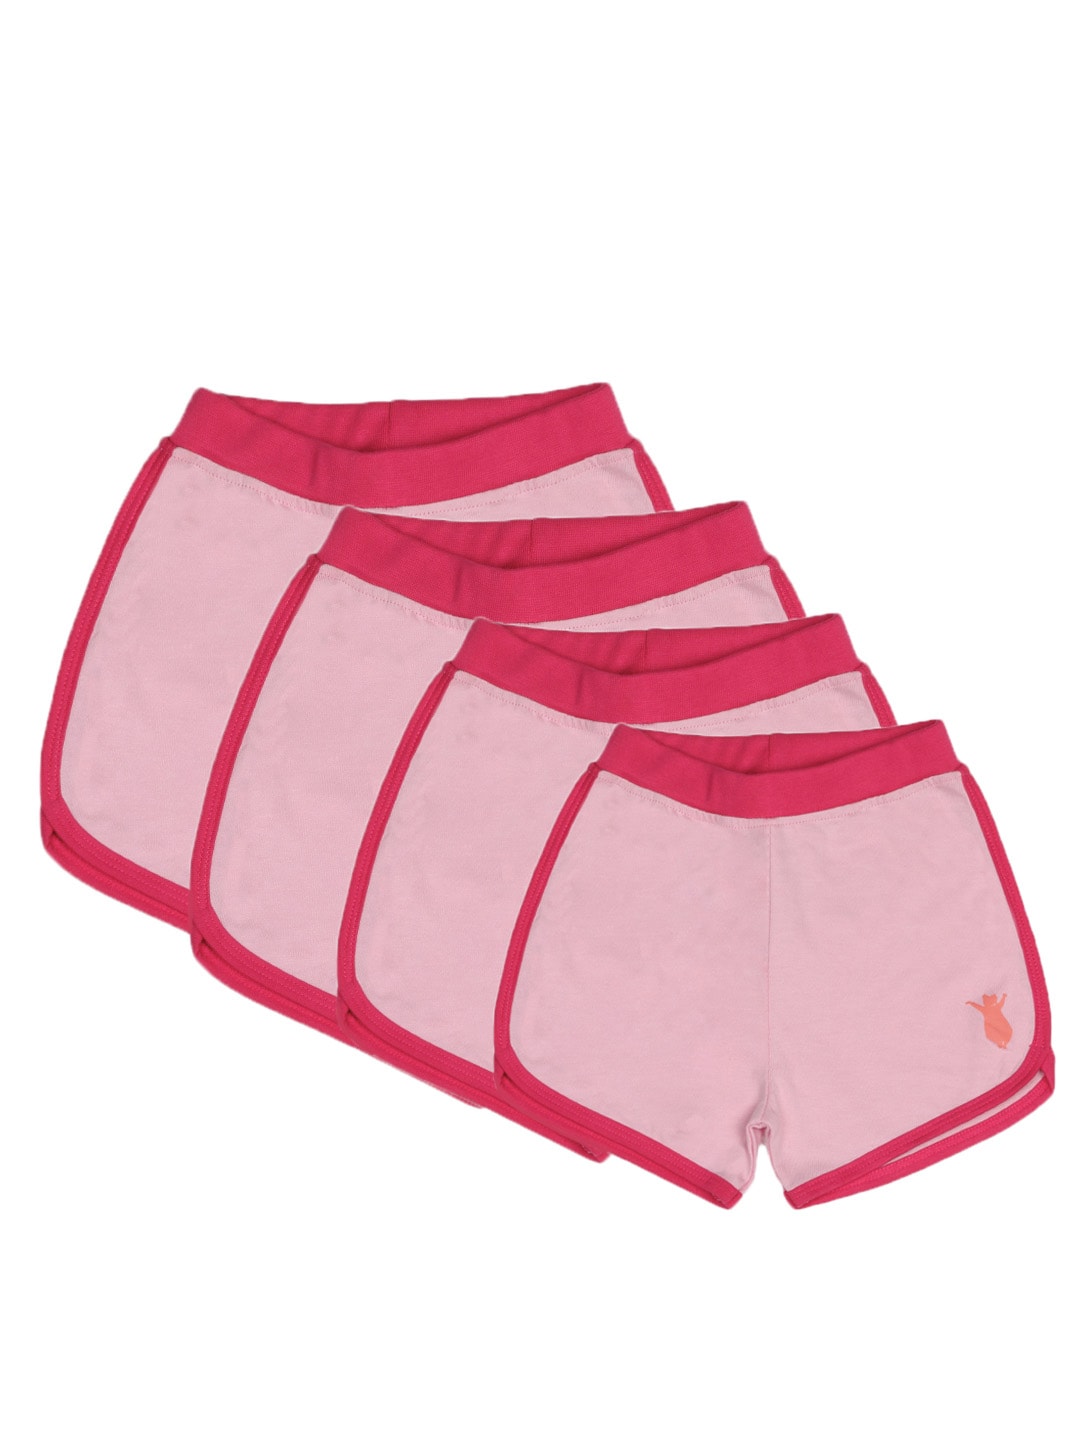 Madagascar3 Girls Pink Shorts